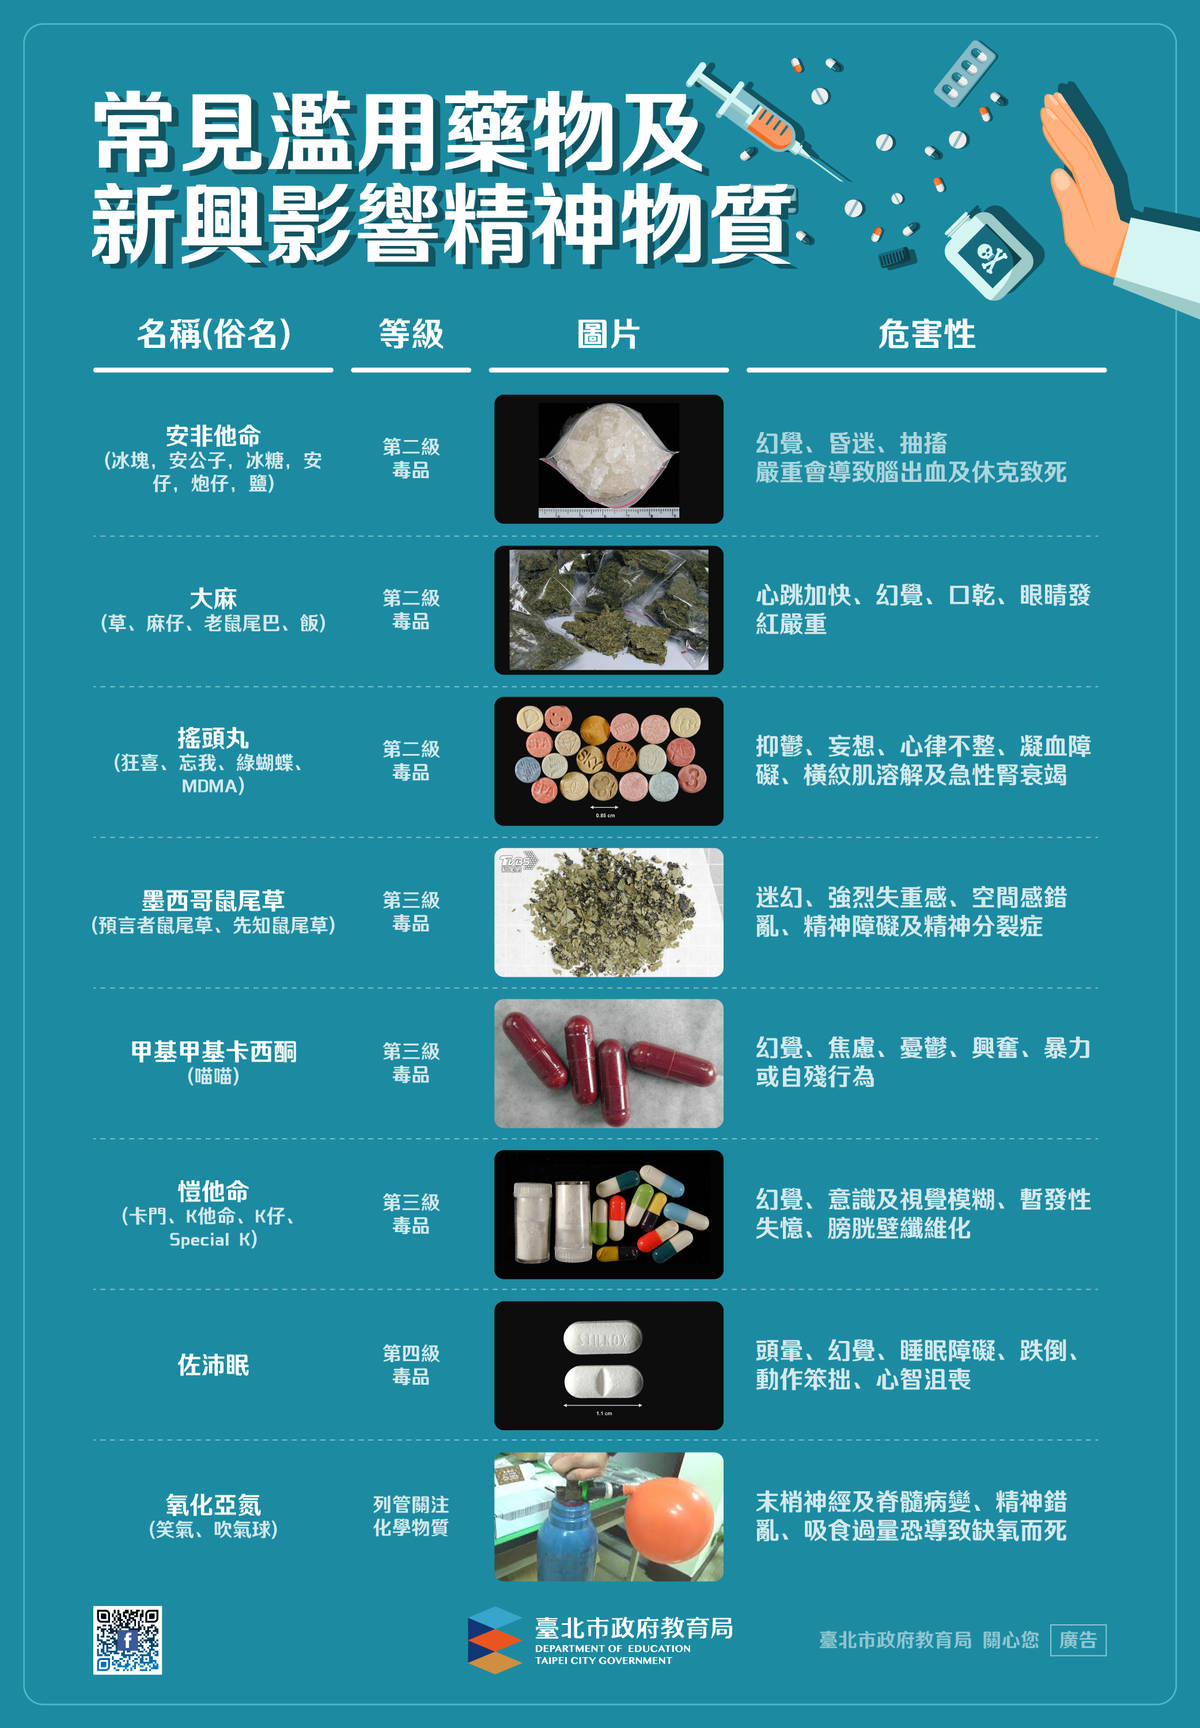 臺北市教育局列出常見濫用藥物及新興影響精神物質